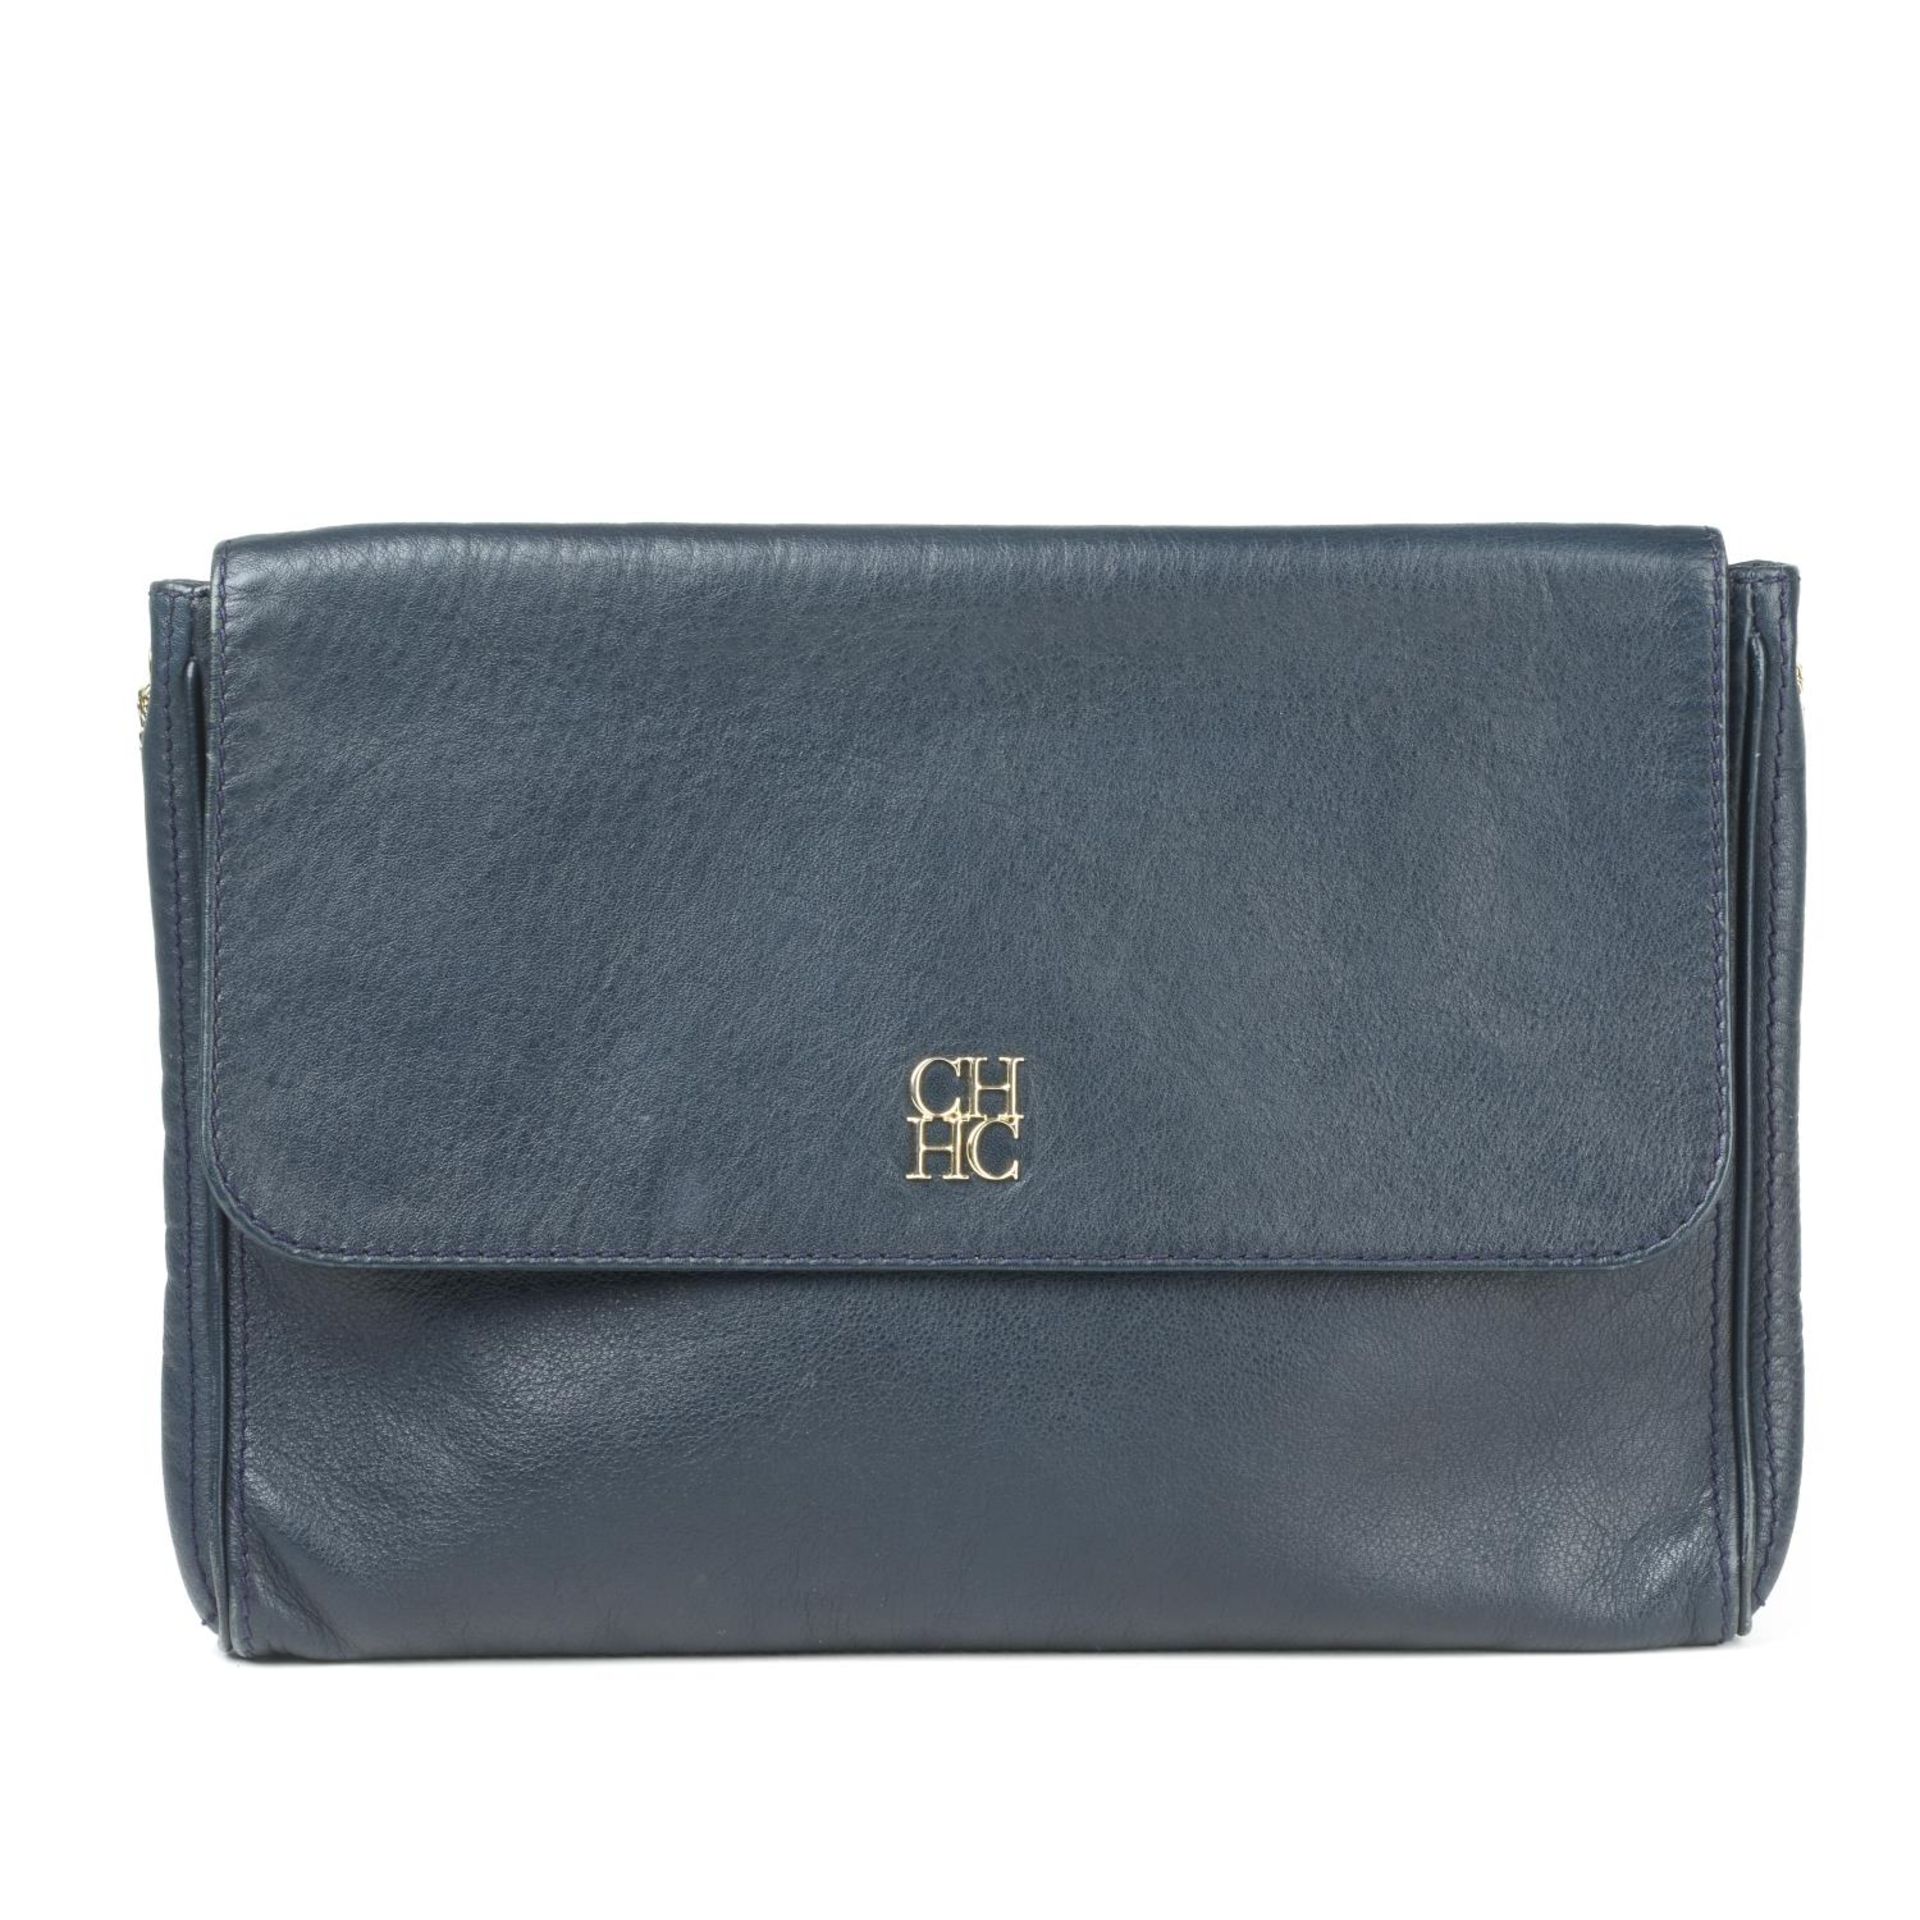 CAROLINA HERRERA - a leather handbag.